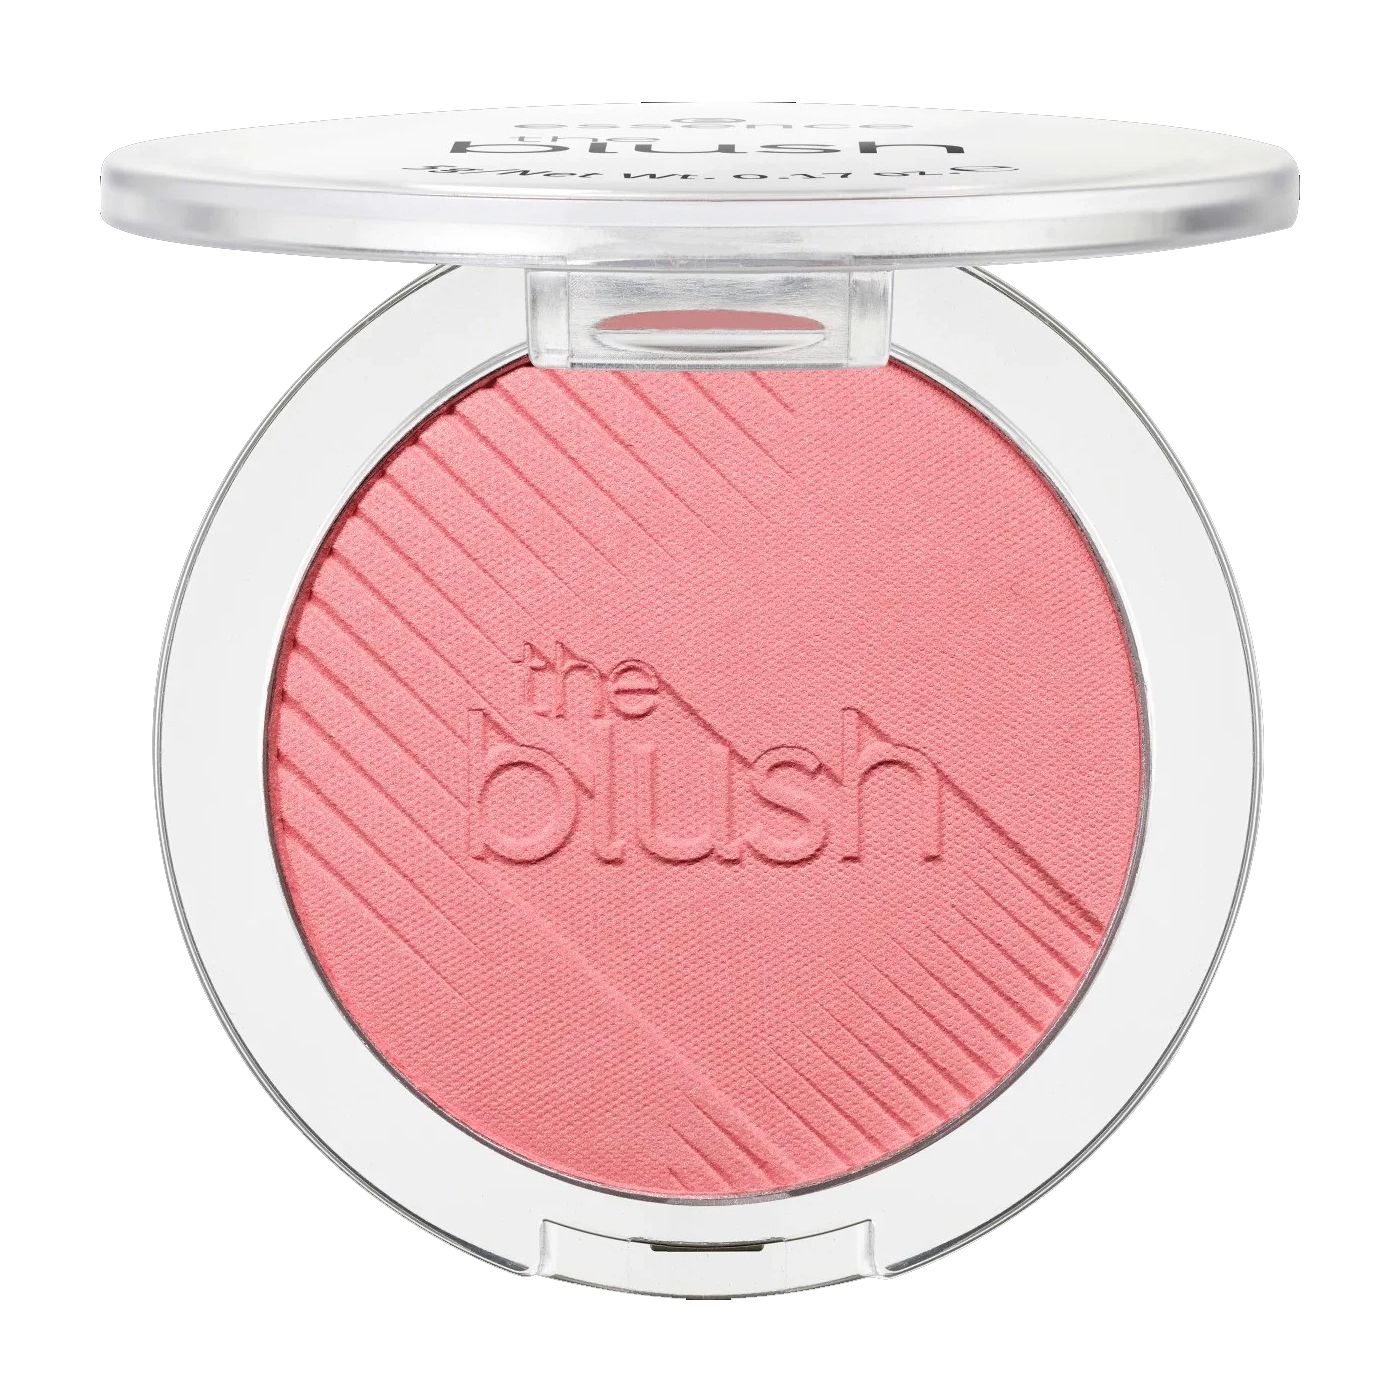  Phấn má essence cosmetics Rouge the blush màu 80 (HỒNG BABY) 5 g 